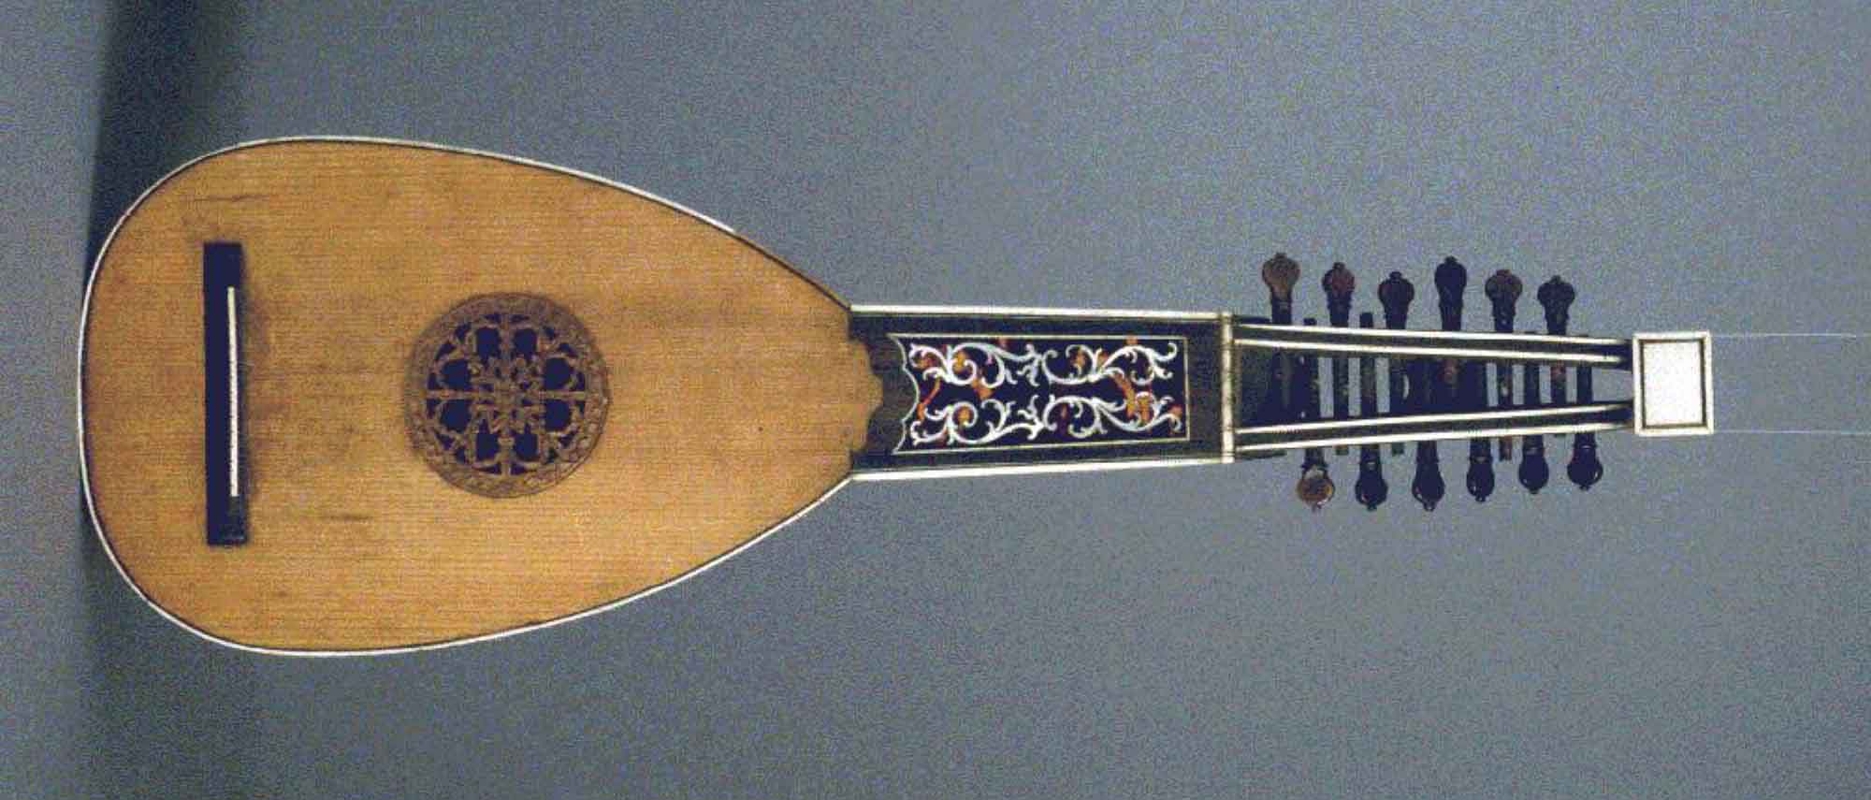 Многострунный музыкальный инструмент эпохи Барокко